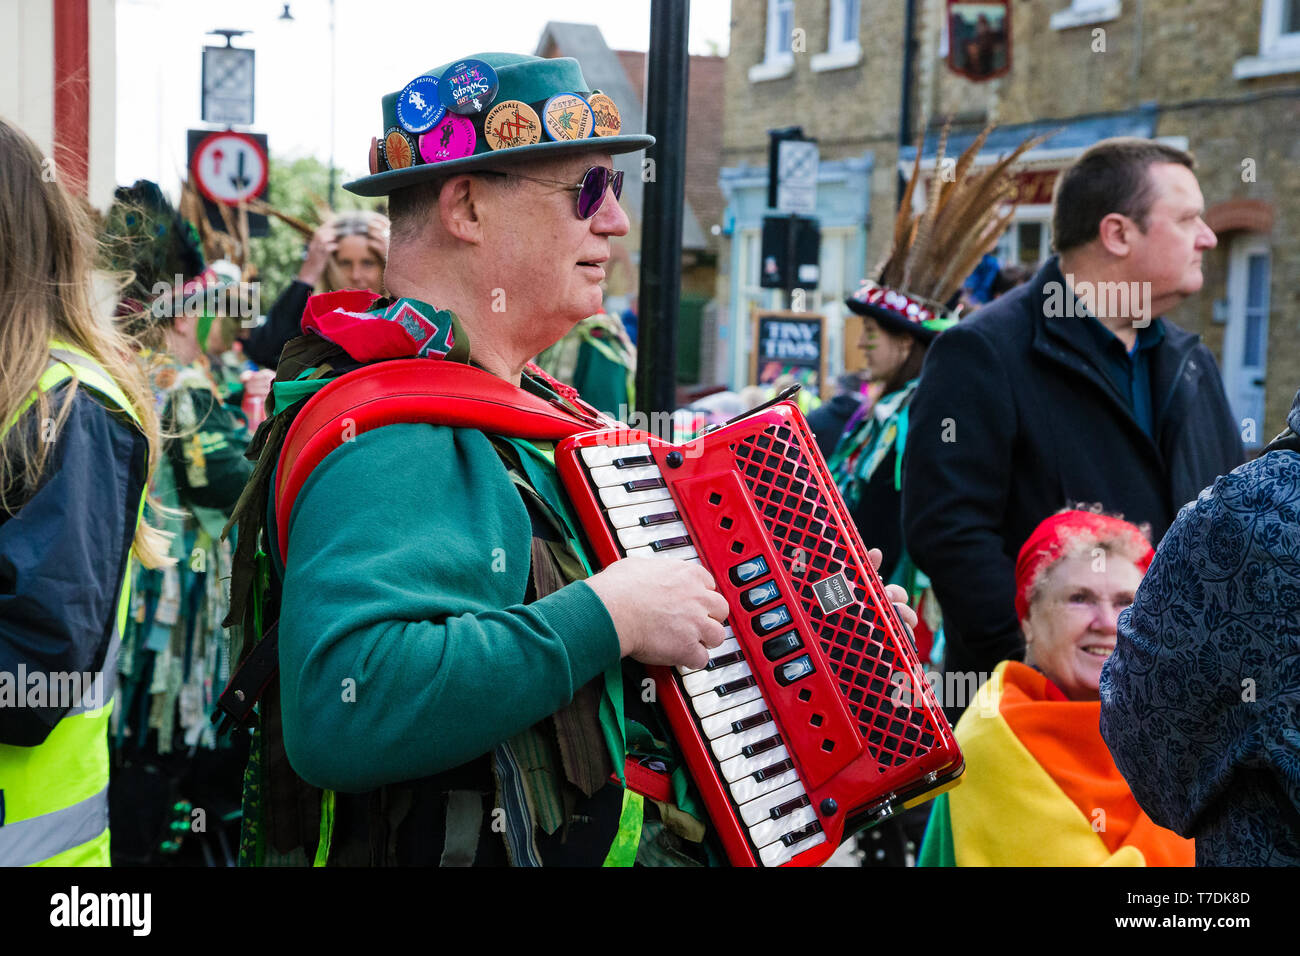 Festival balaie Rochester, Kent, UK. 4e mai 2019. L'homme habillé en vert joue un accordéon rouge en accompagnement de la danse Morris. Banque D'Images